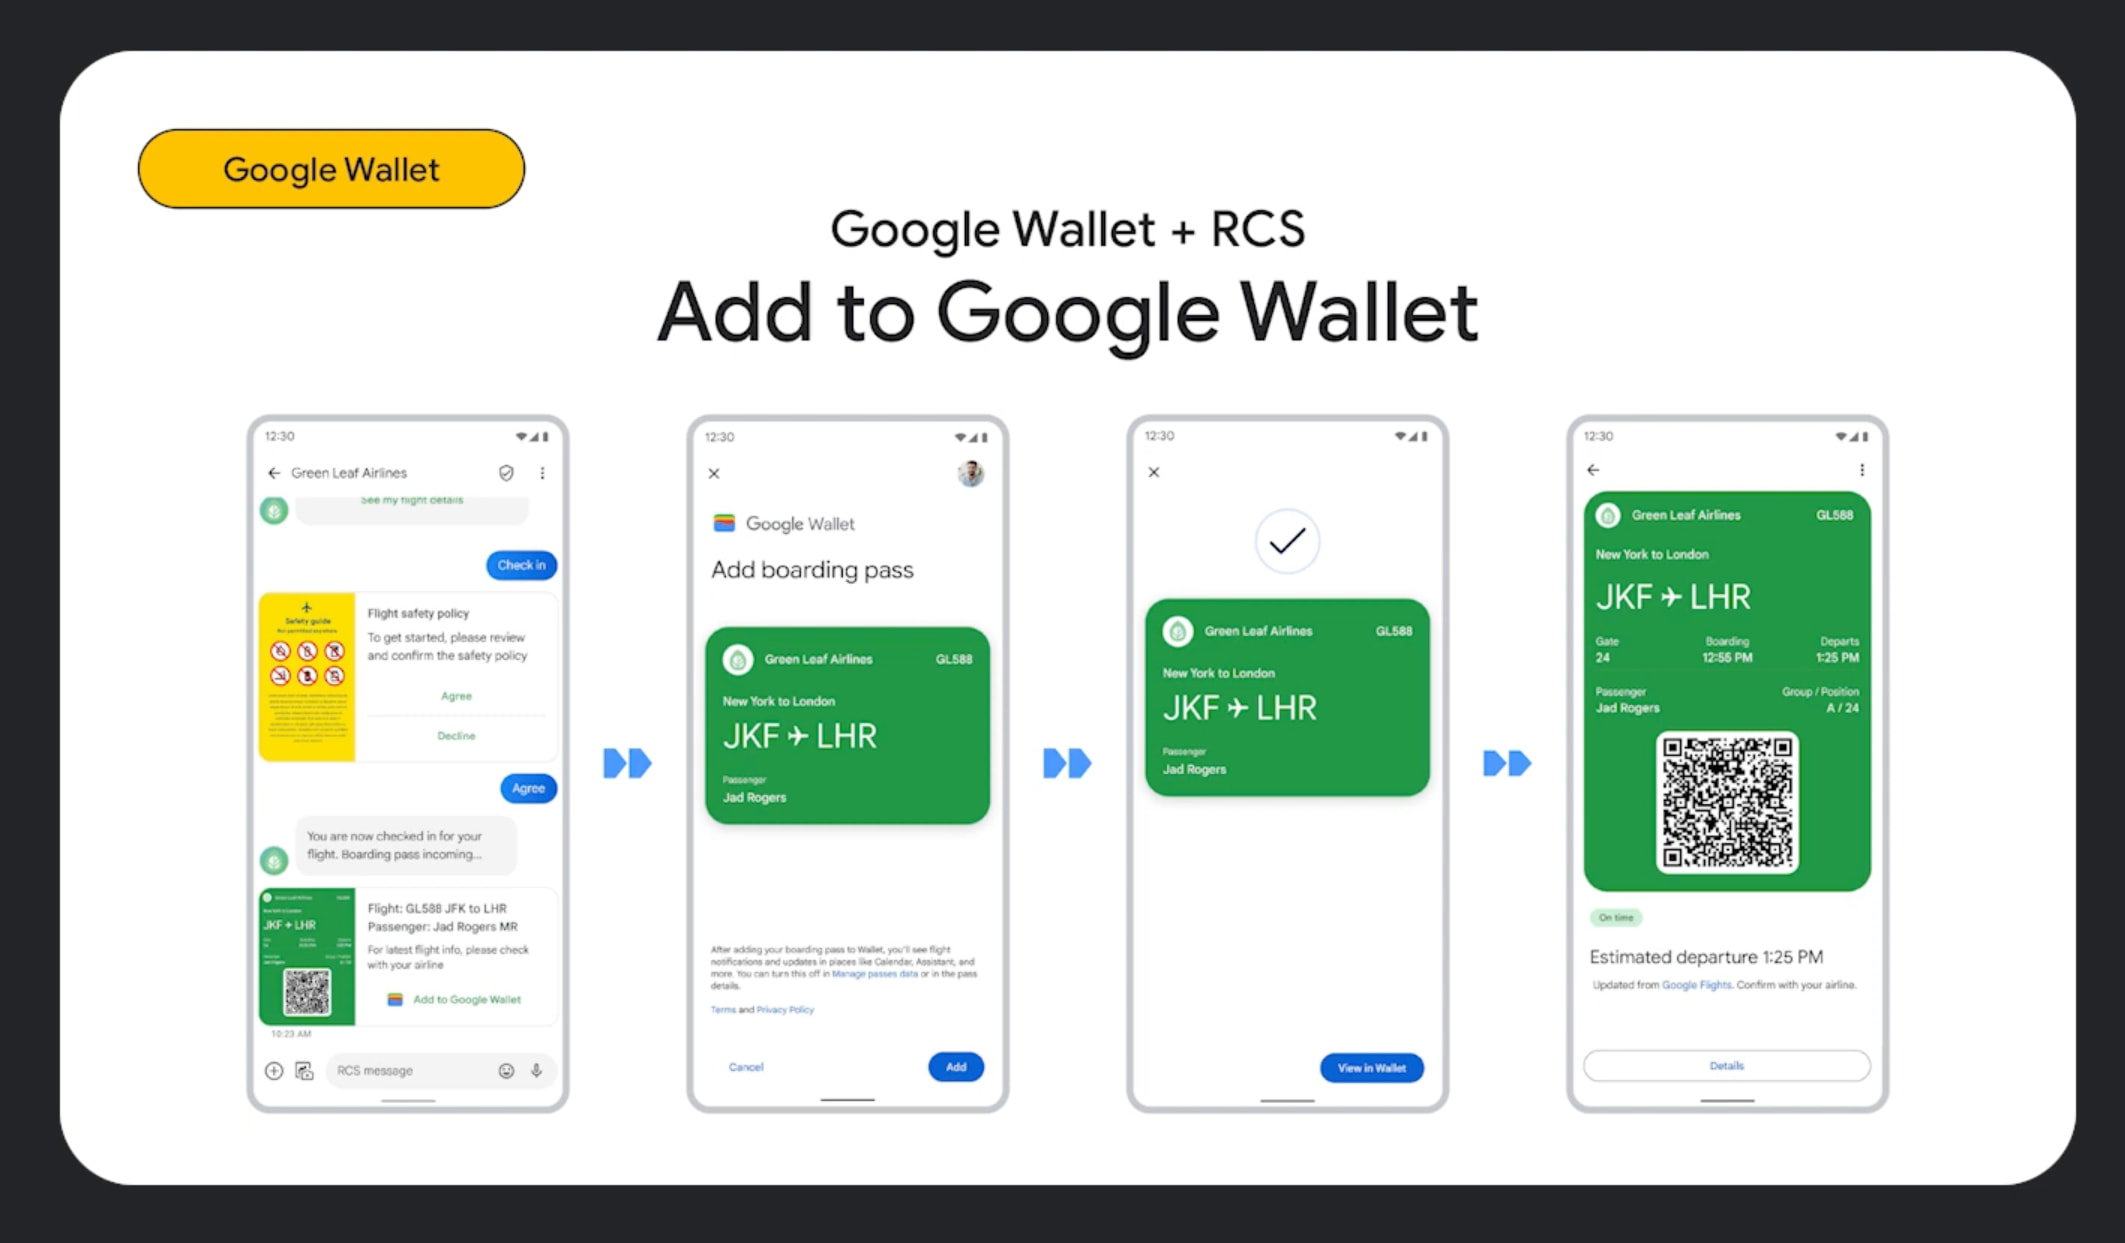 Google Wallet RCS Messages